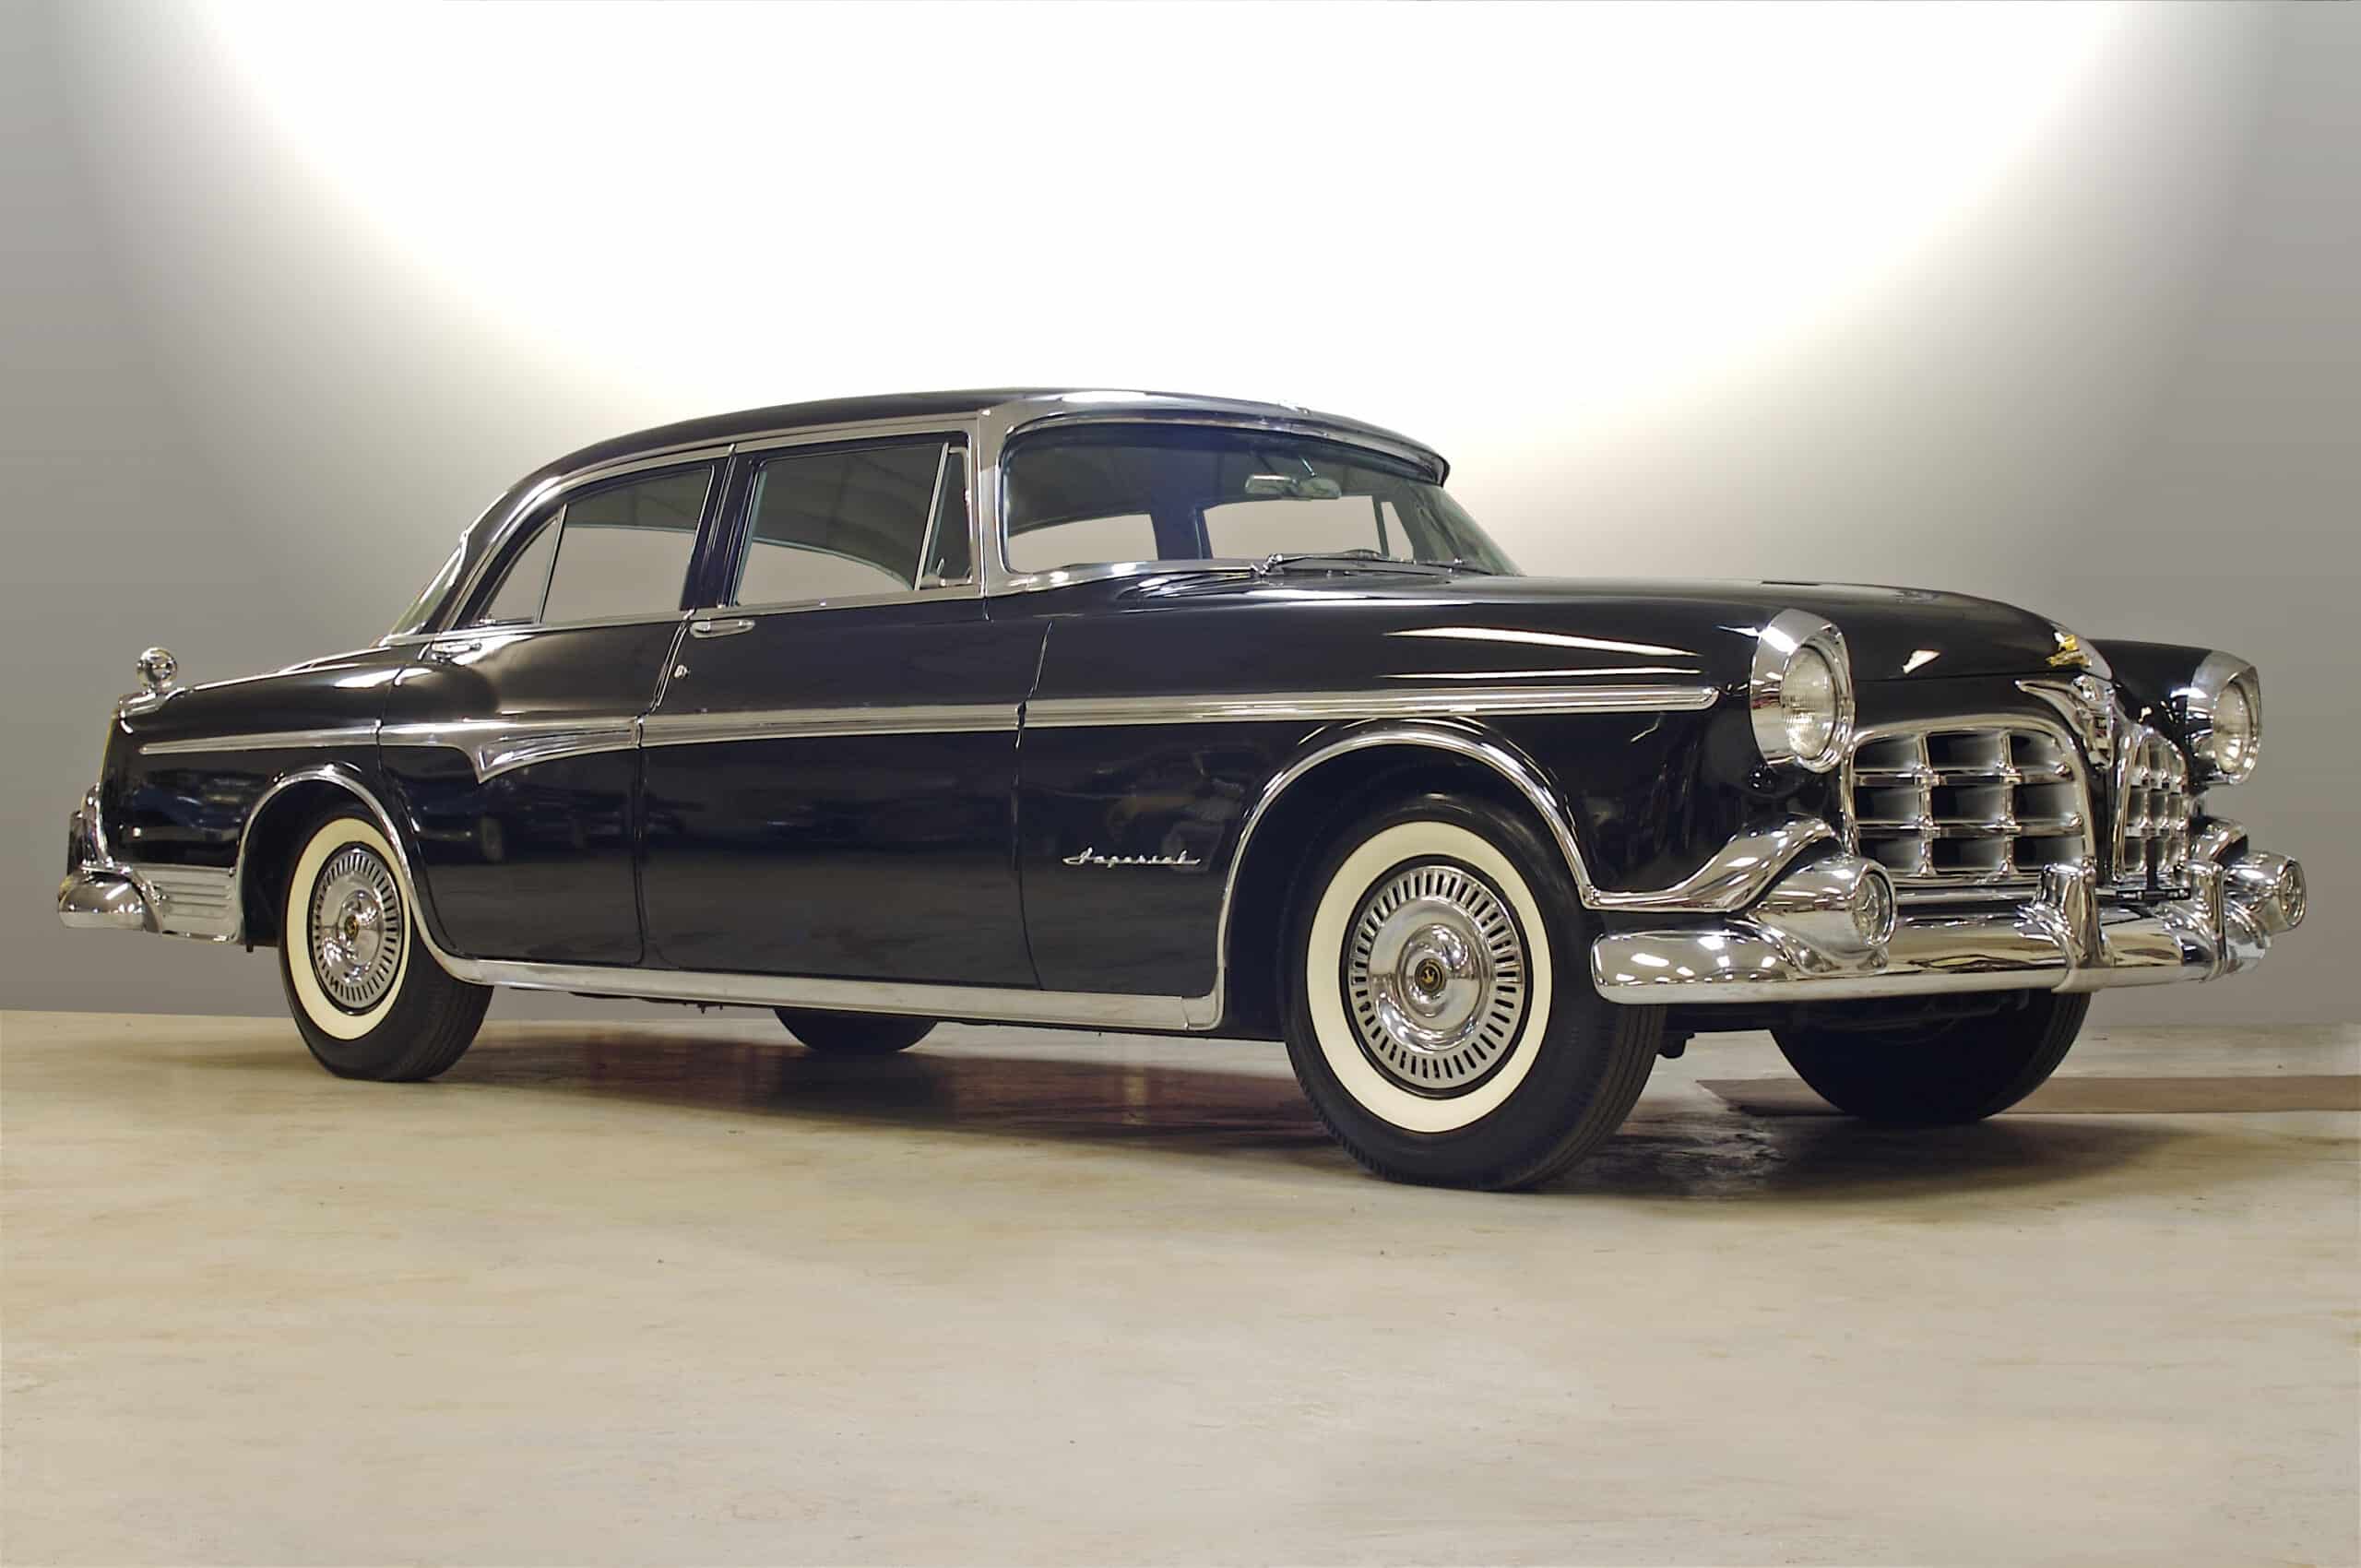 Segundo antecedente de Chrysler LeBaron, el Imperial de 1955